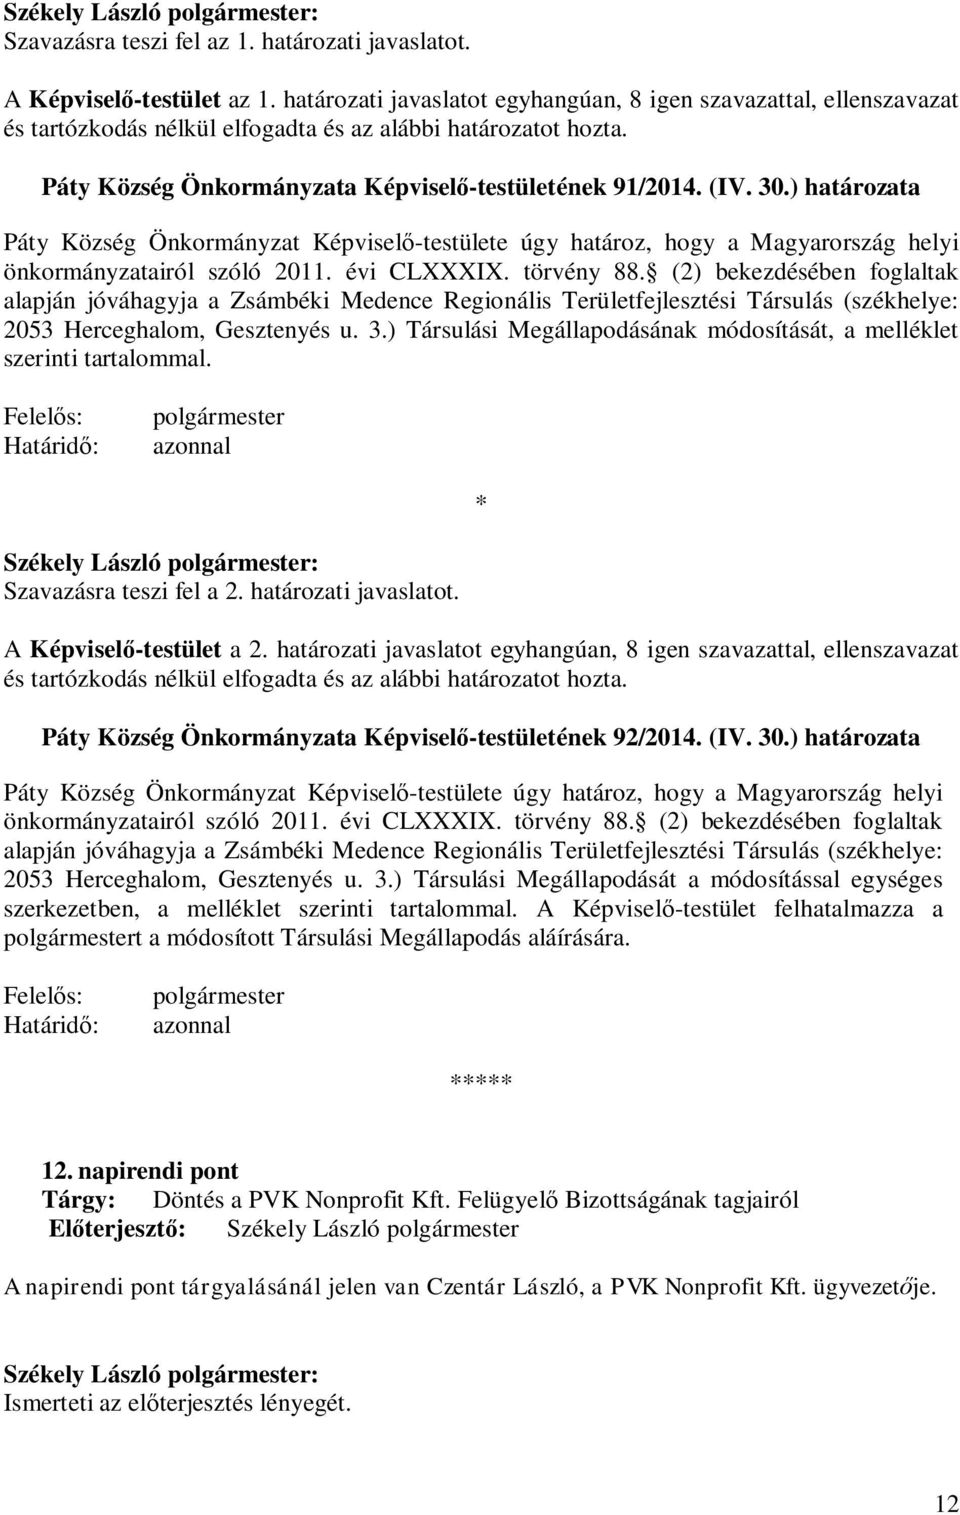 ) határozata Páty Község Önkormányzat Képvisel -testülete úgy határoz, hogy a Magyarország helyi önkormányzatairól szóló 2011. évi CLXXXIX. törvény 88.